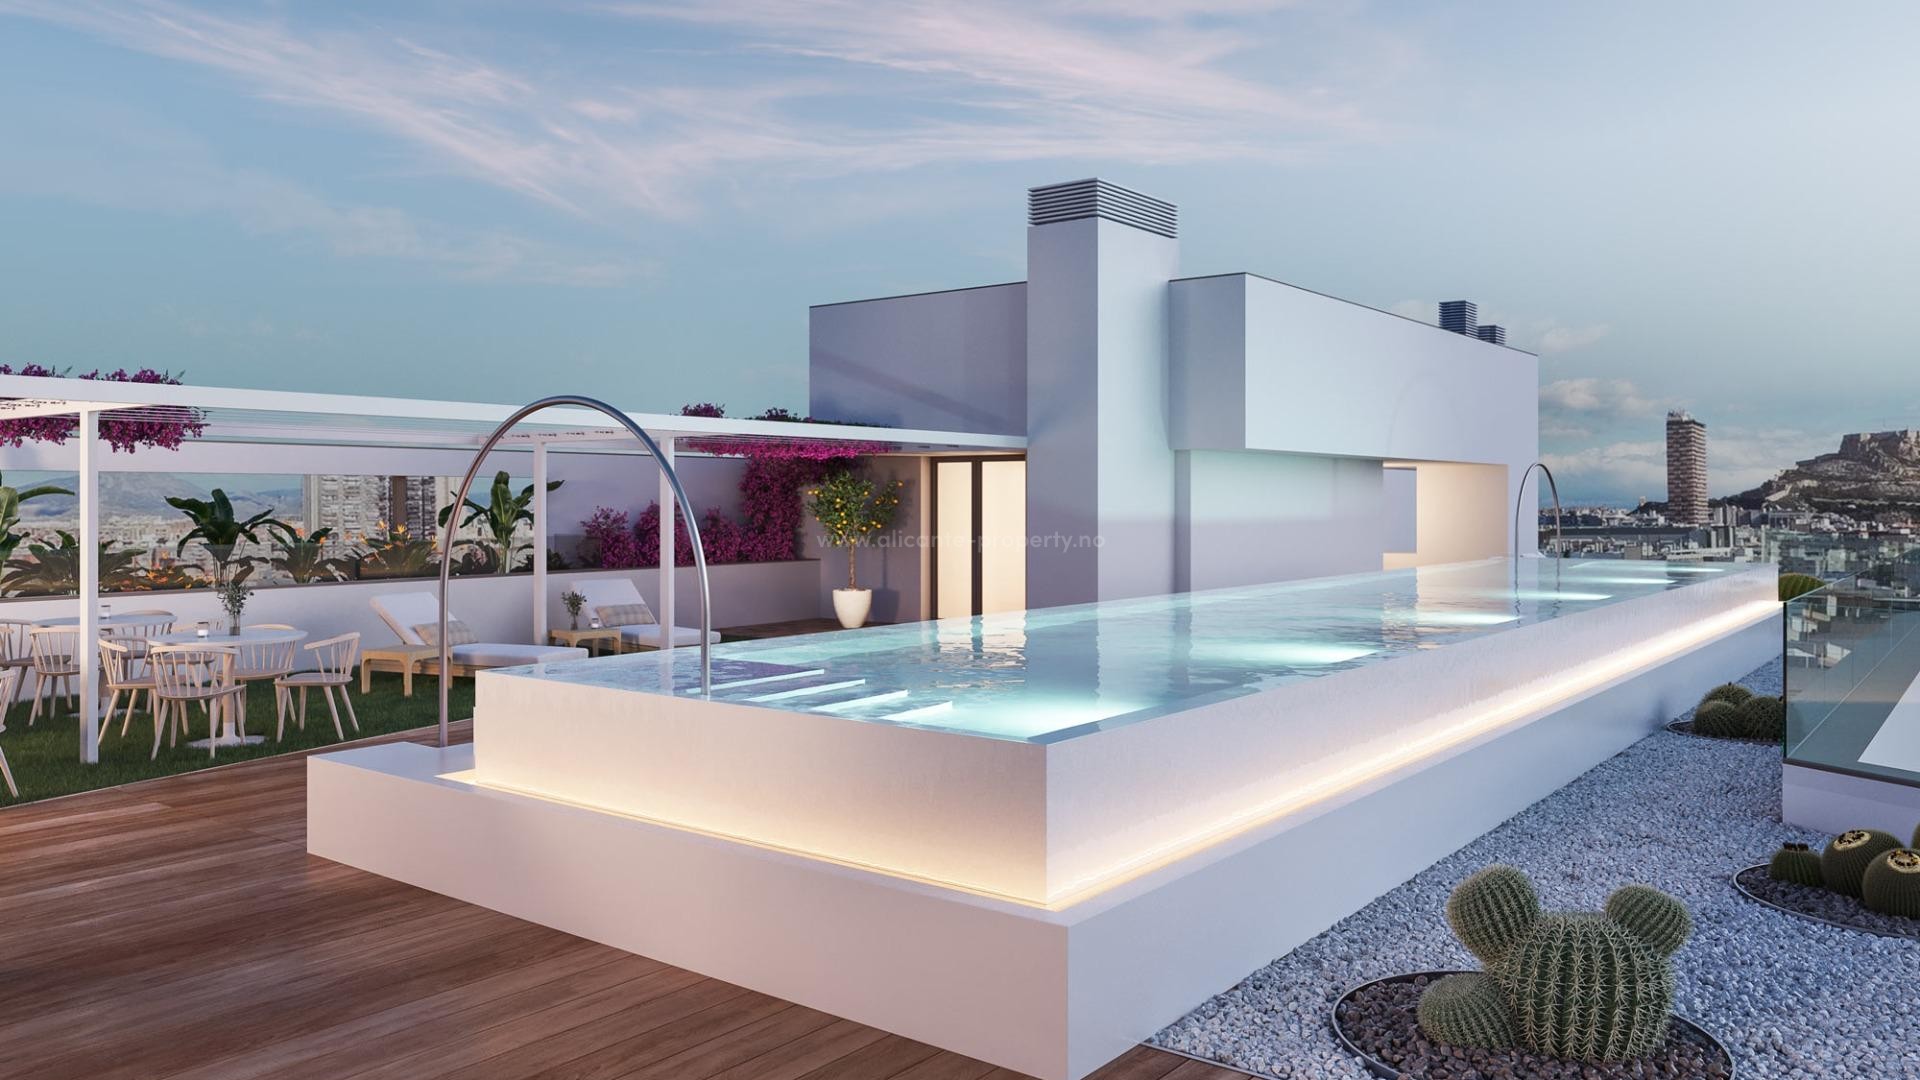 53 nye eksklusive leiligheter i Alicante by, 2/3/4 soverom, 2 bad, utrolig panoramautsikt, svømmebasseng, treningsstudio og takterrasse med solterrasse.